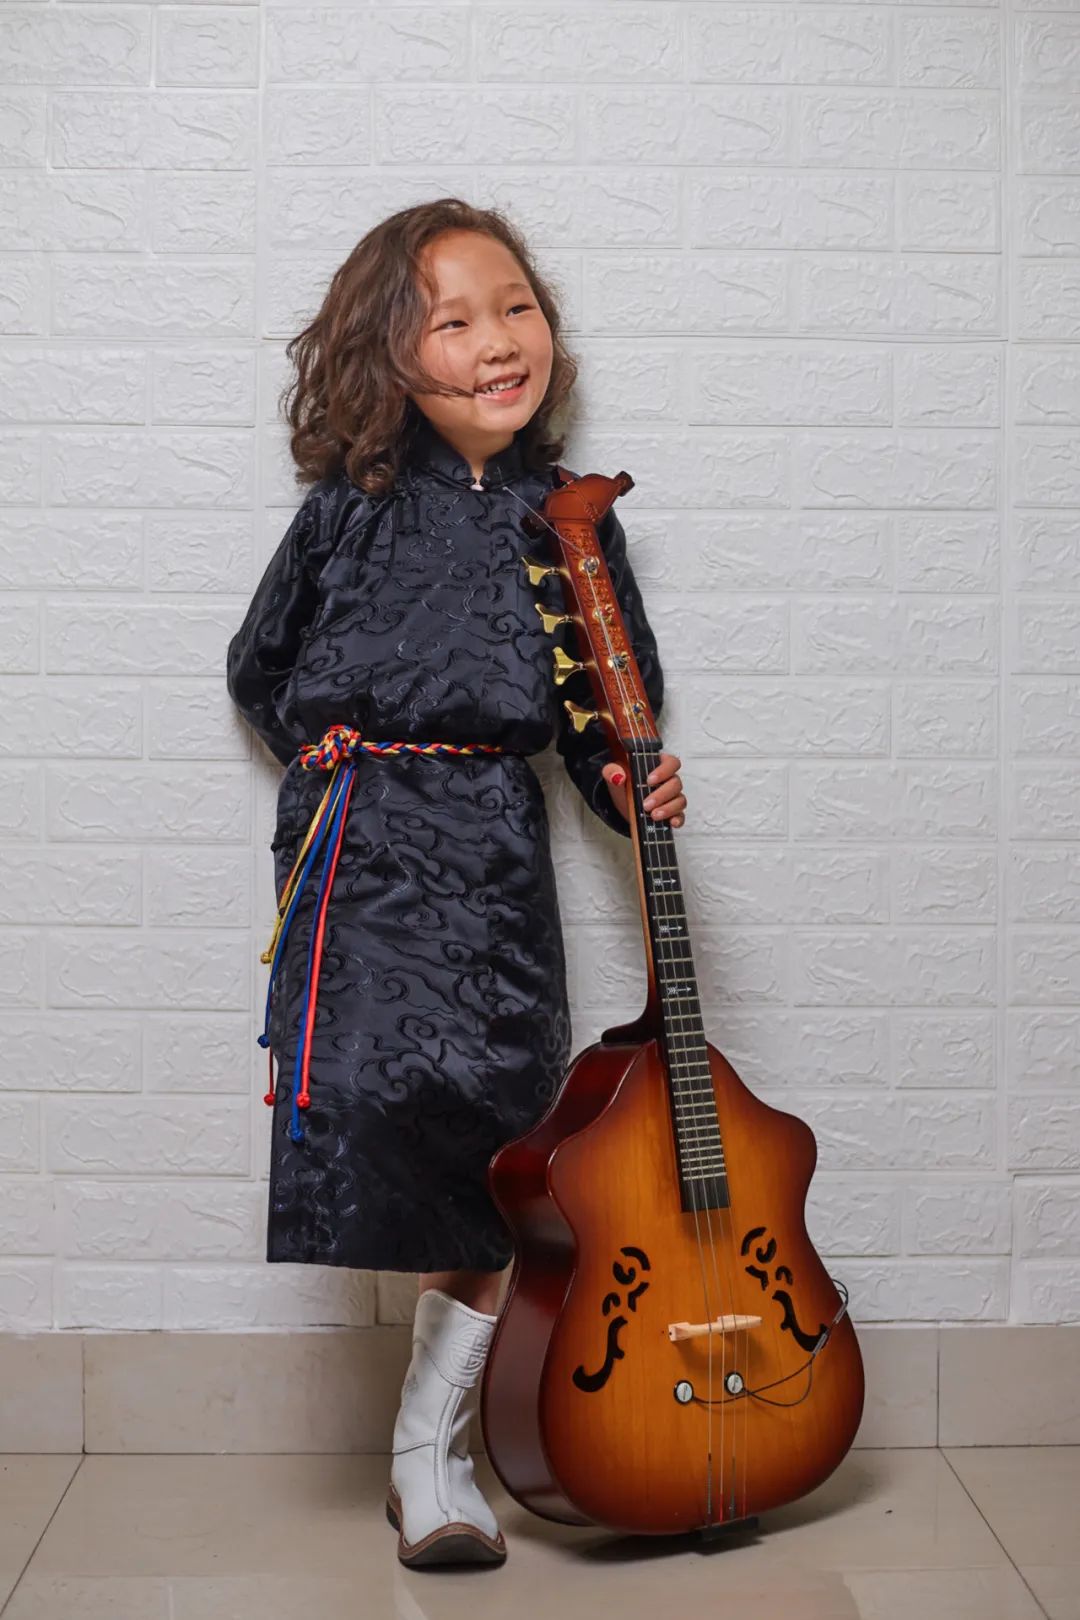 6岁小朋友演唱《永恒的火布斯》，向大家介绍最古老的蒙古族第一弹拨乐器火布斯